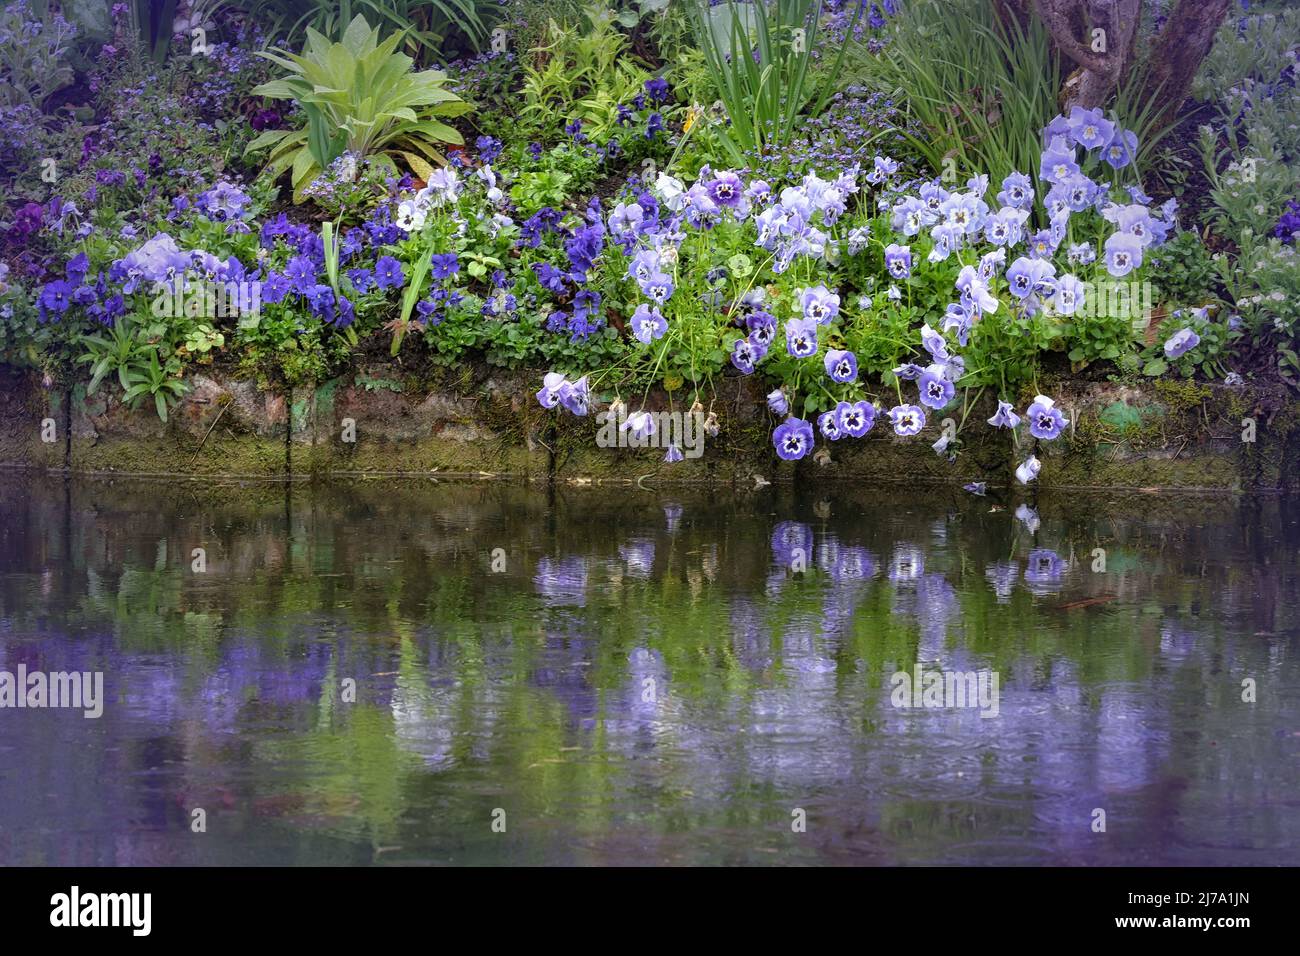 Pansies violettes au jardin aquatique de Claude Monet. Giverny, France Banque D'Images